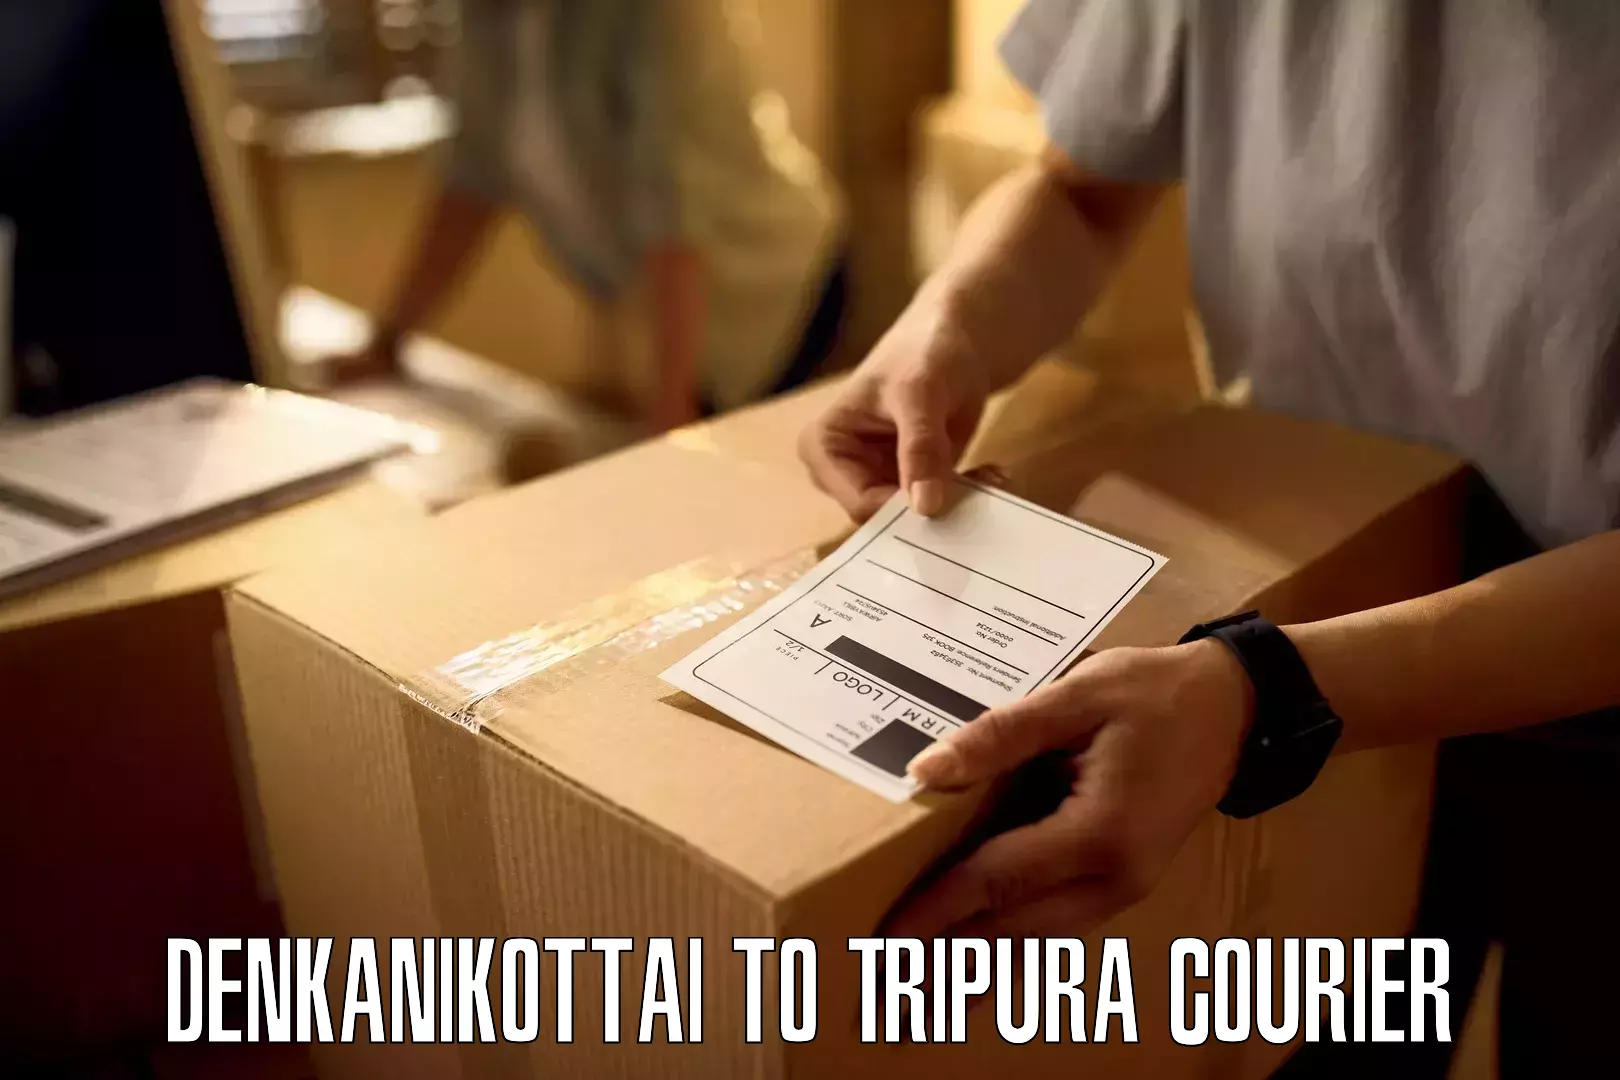 Efficient parcel service Denkanikottai to West Tripura